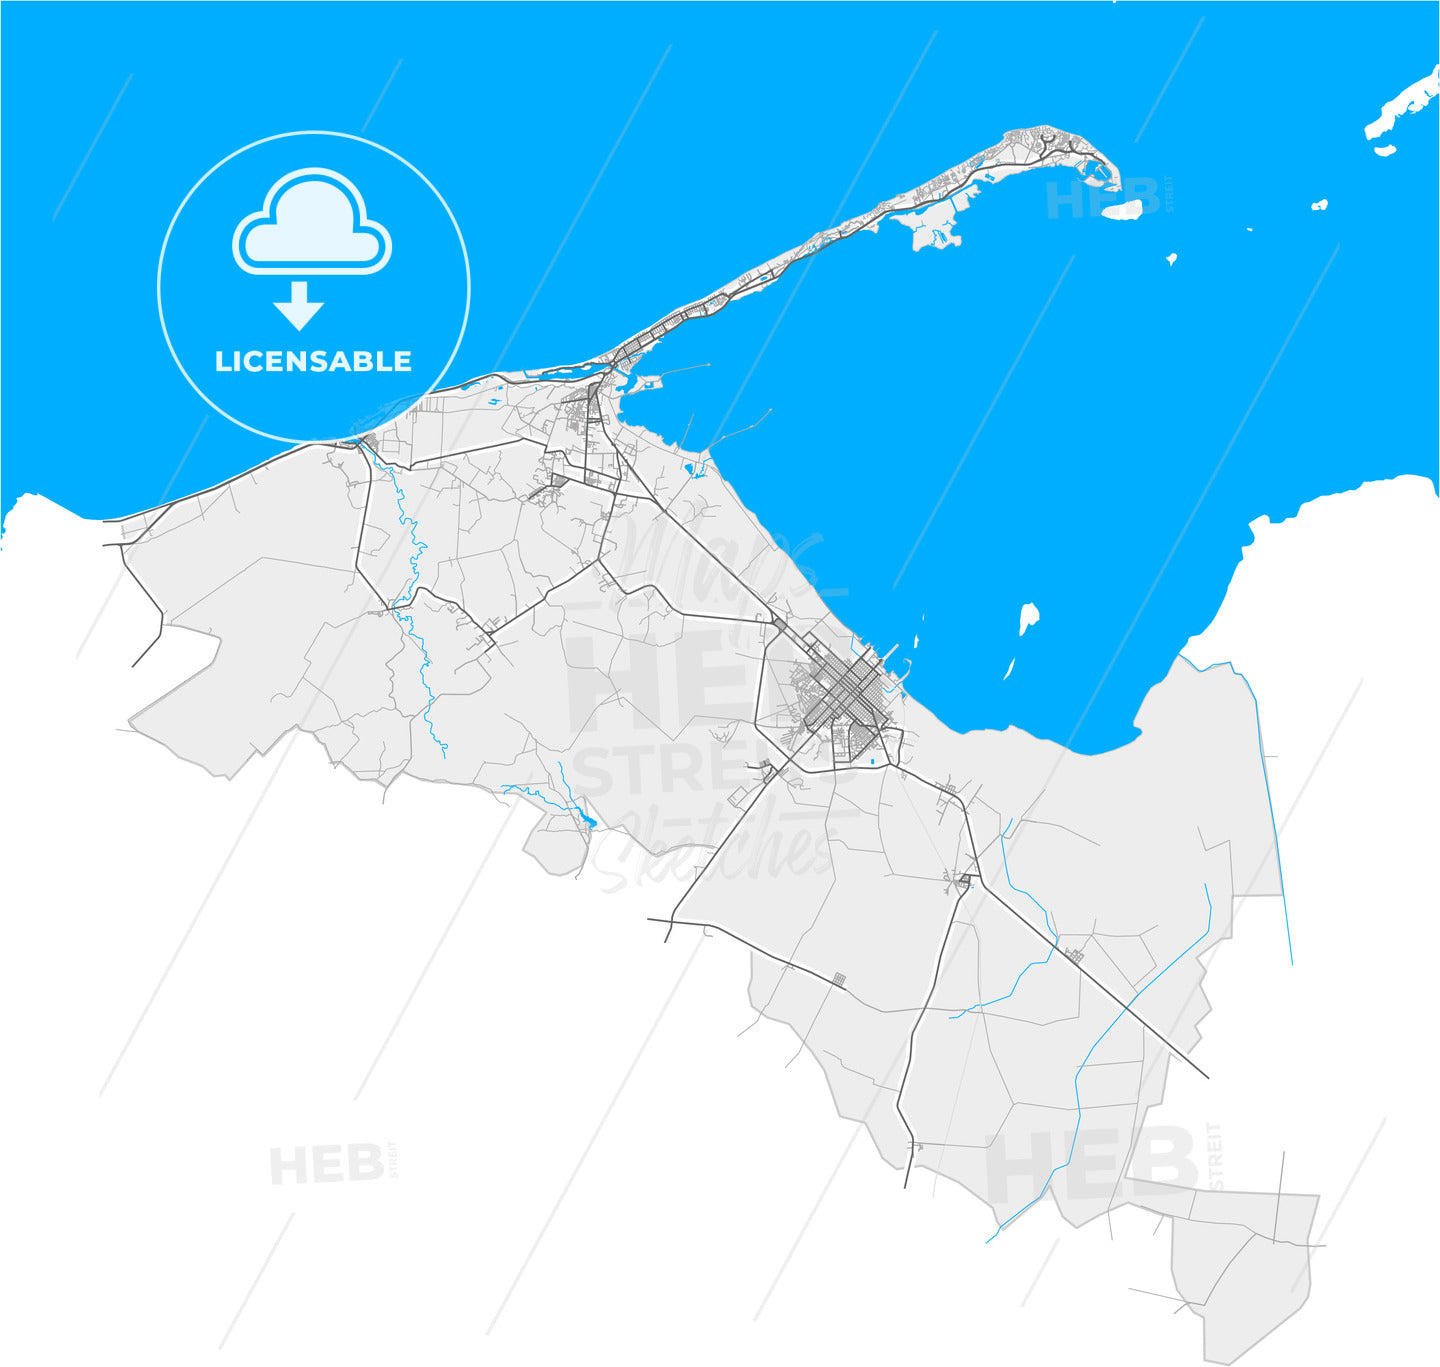 Cárdenas, Matanzas, Cuba, high quality vector map